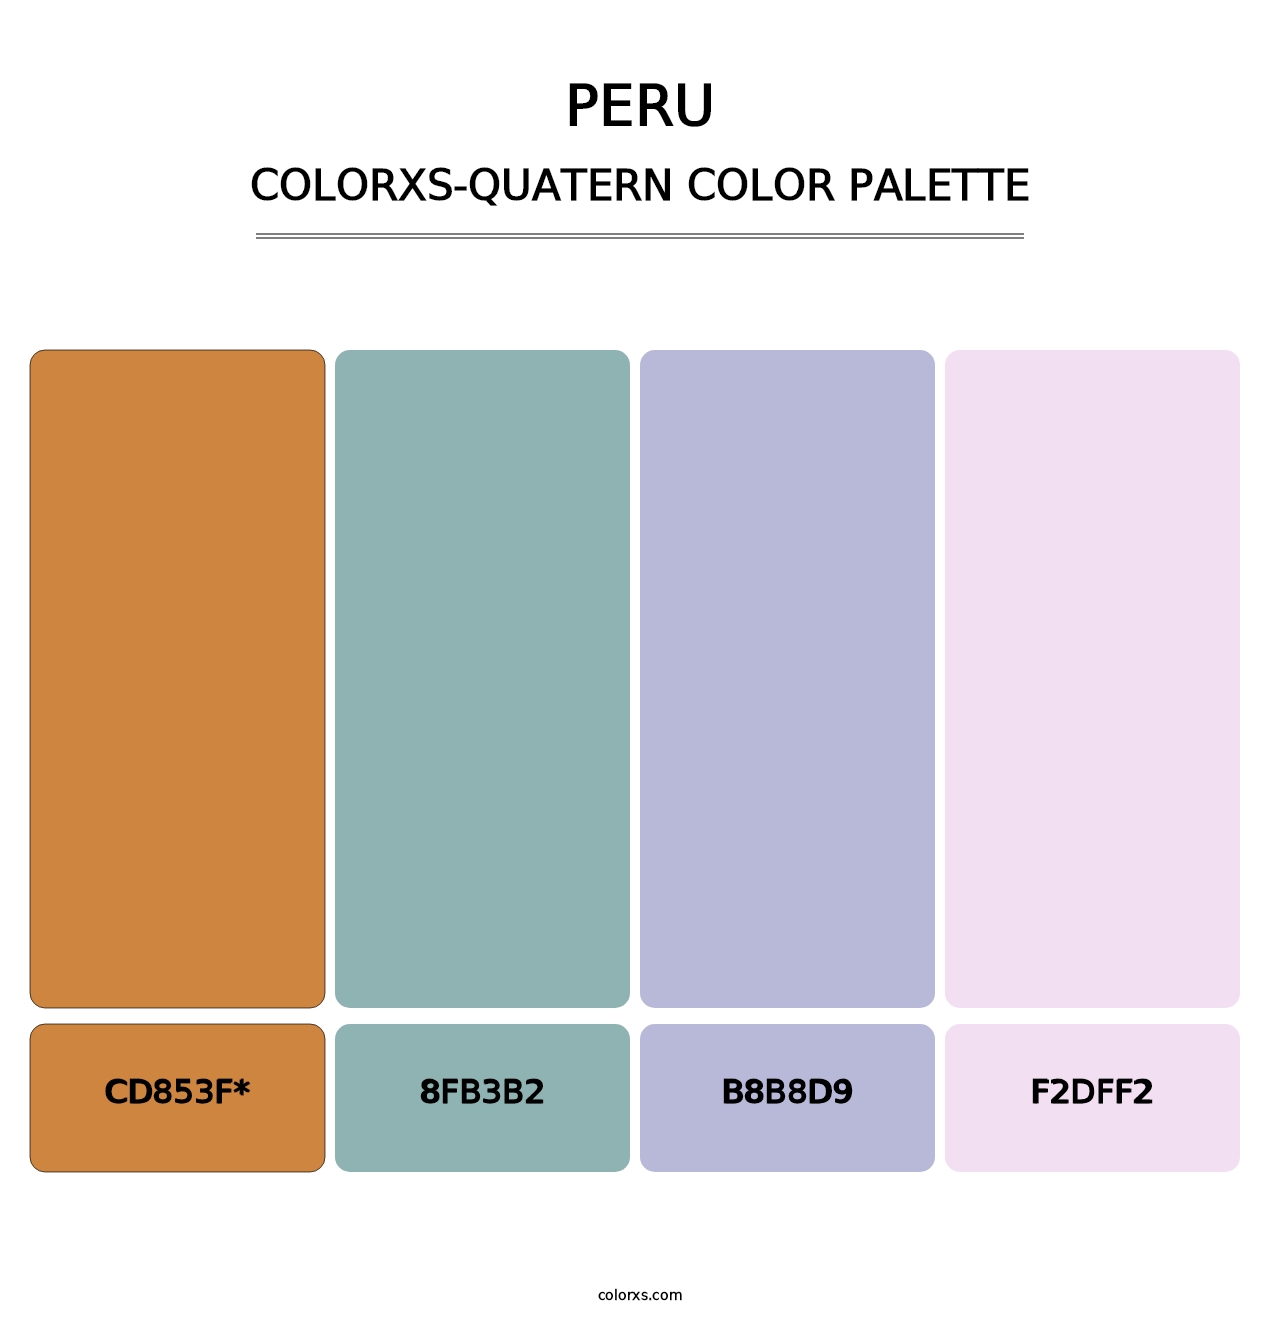 Peru - Colorxs Quatern Palette